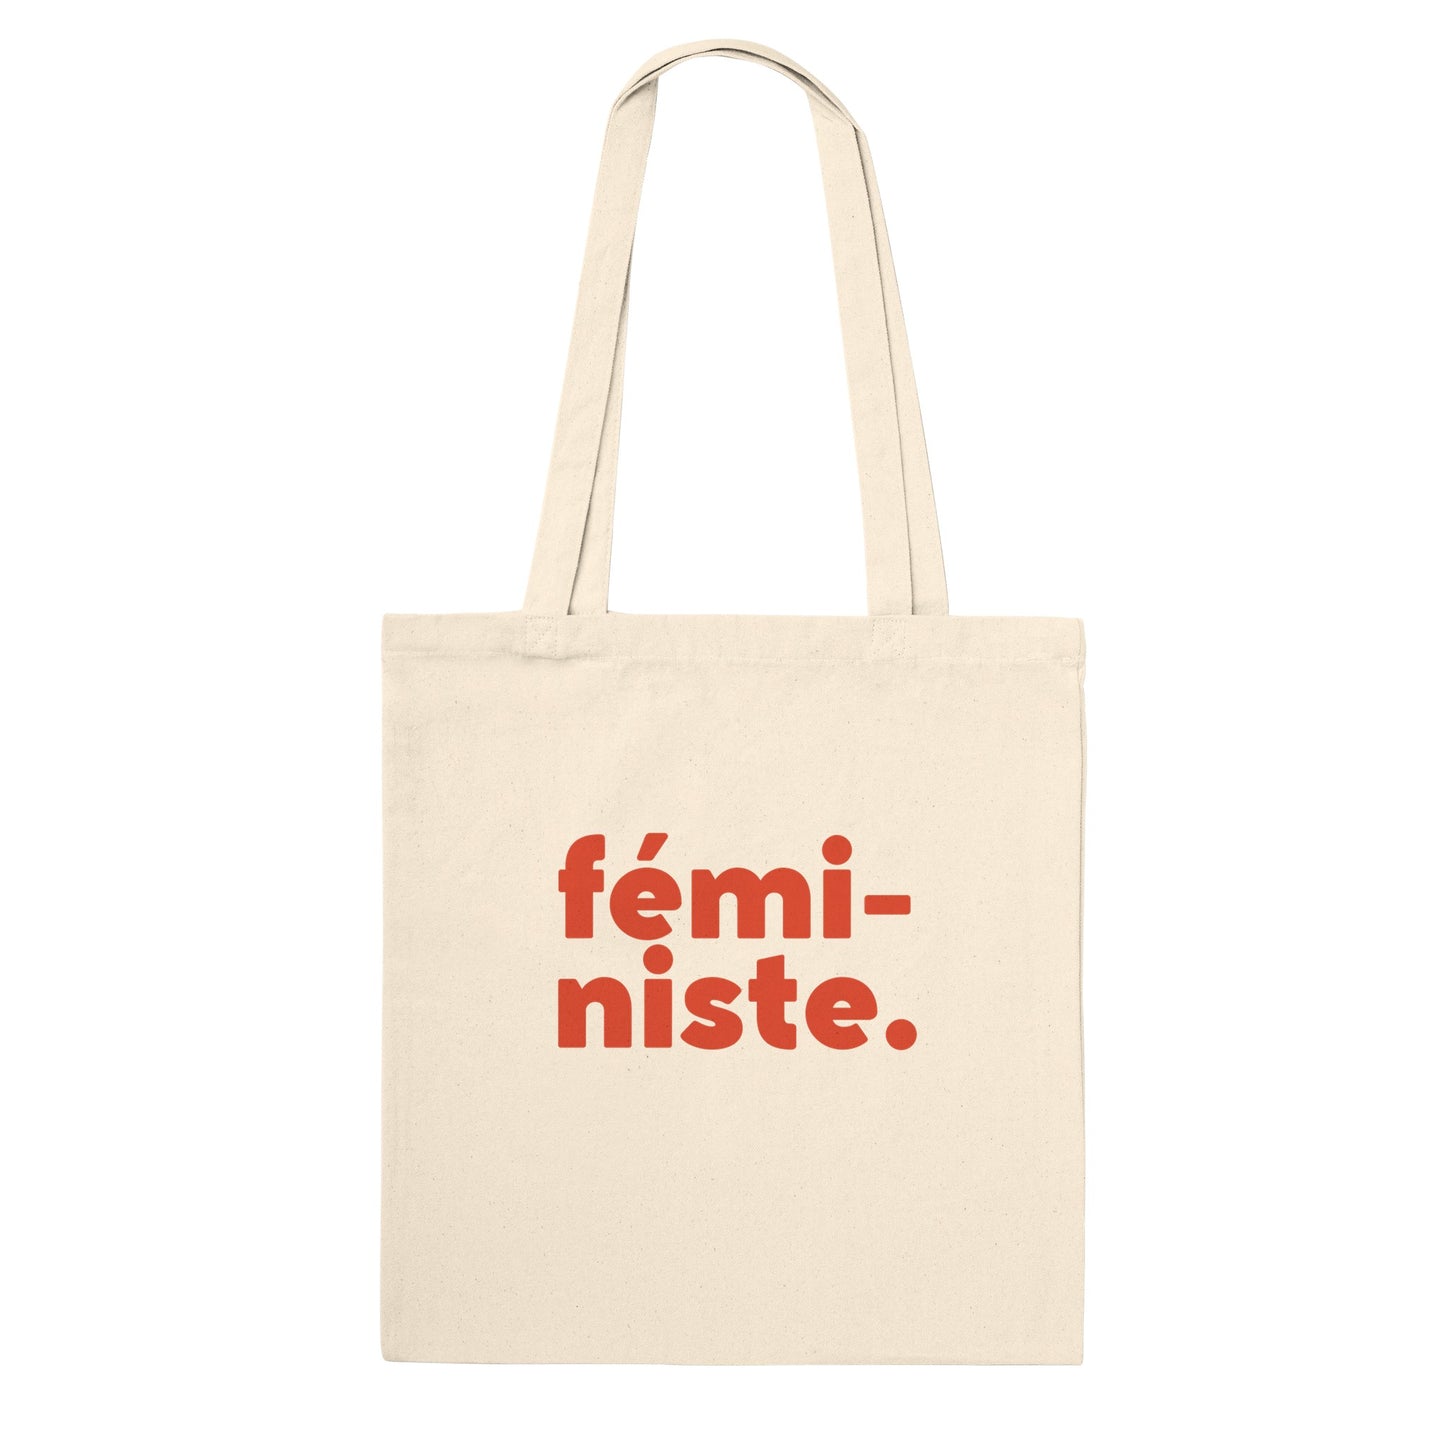 Feministe. Classic Tote Bag